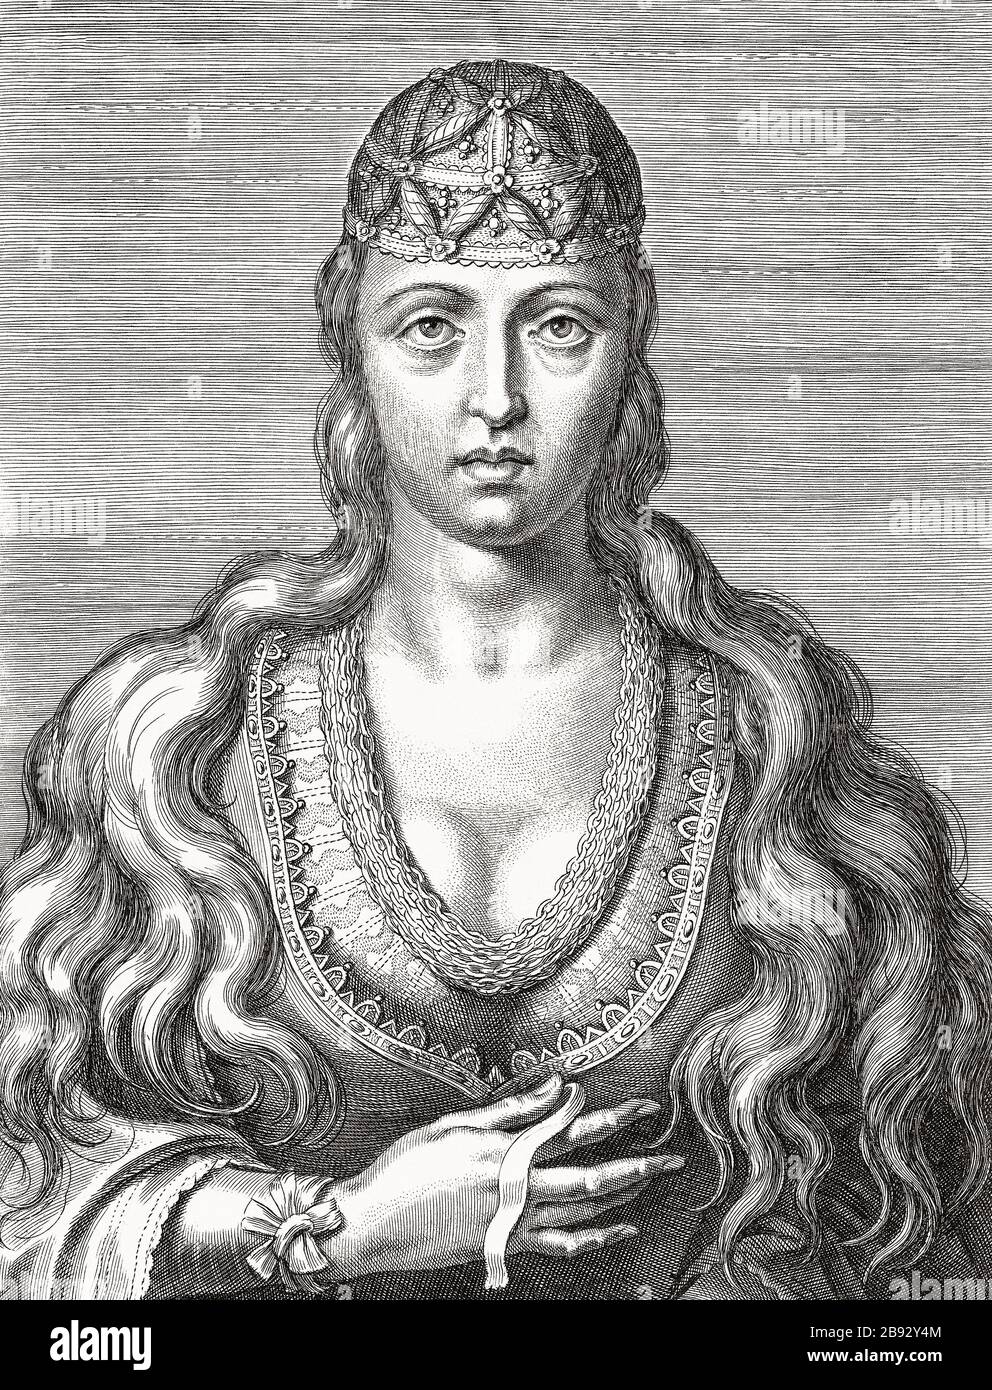 Princesse Joan du Portugal, 1452 - 1490. Elle était connue sous le nom de Santa Joana Princesa et fut béatifiée en 1693. D'une gravure du XVIIe siècle après une peinture du XVIe siècle par un artiste inconnu. Banque D'Images